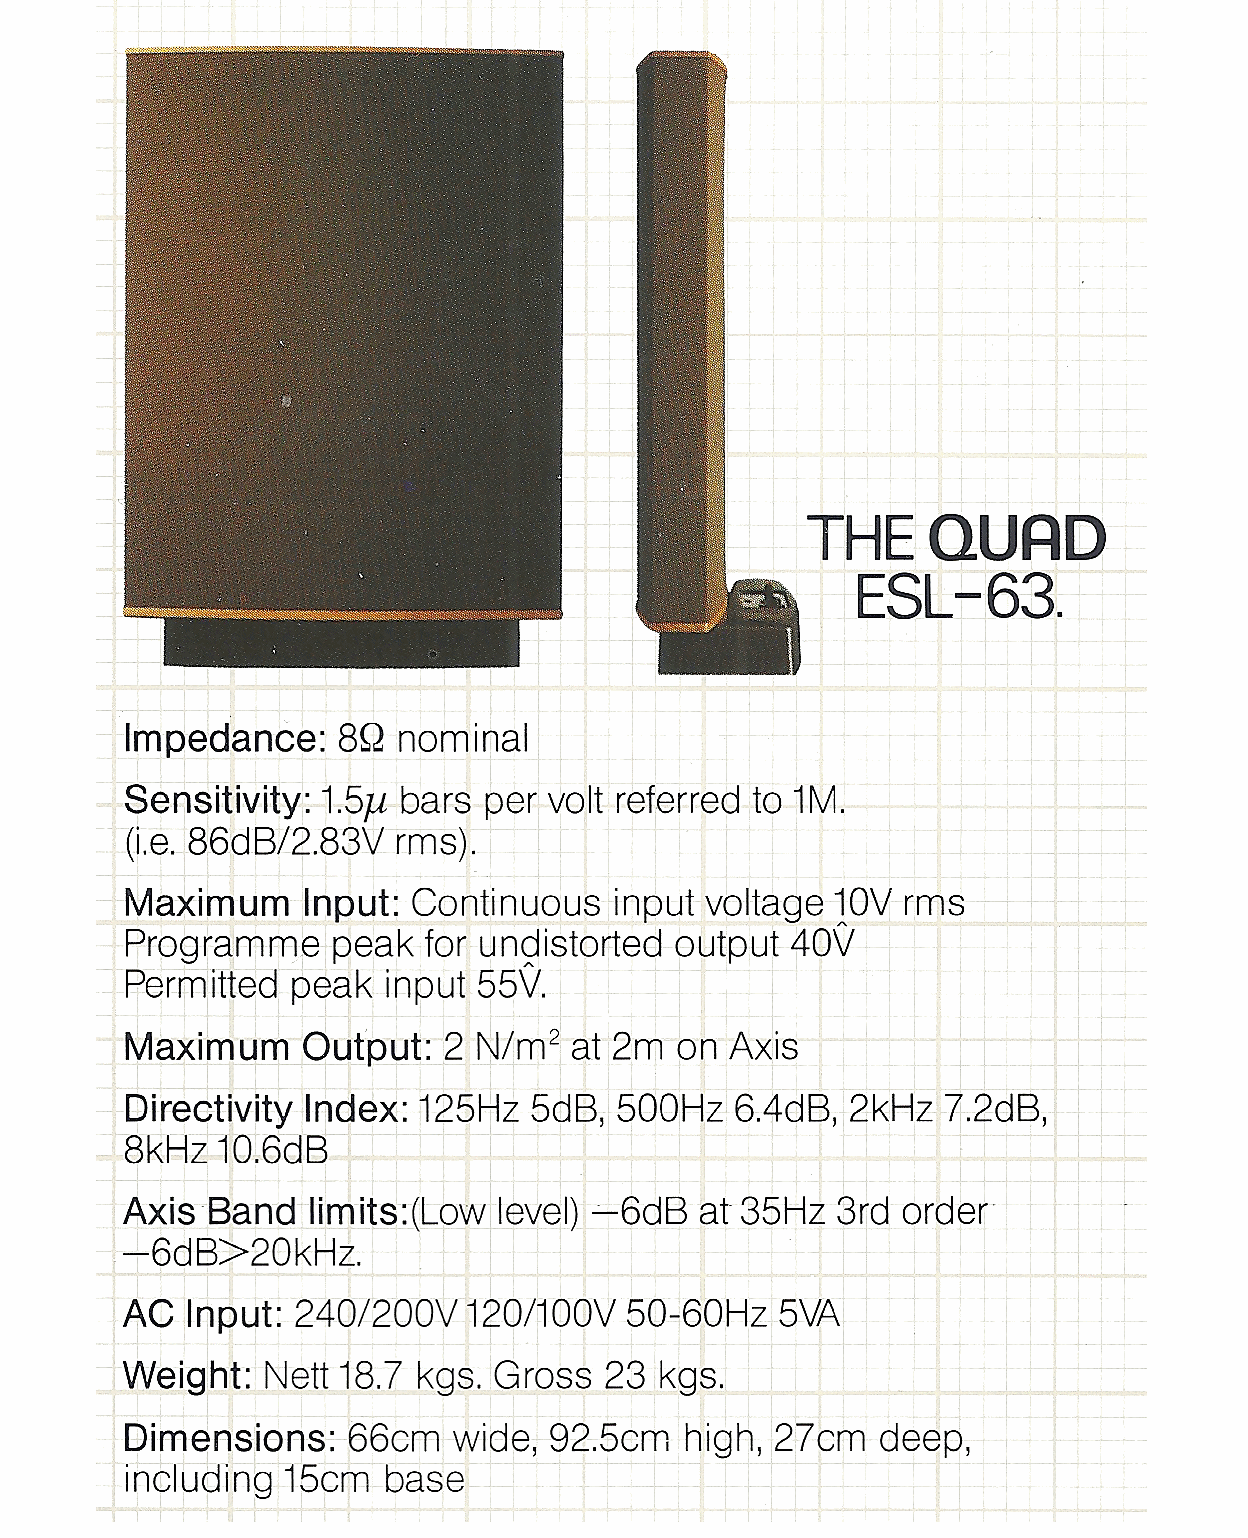 QUAD ESL-63 Specification